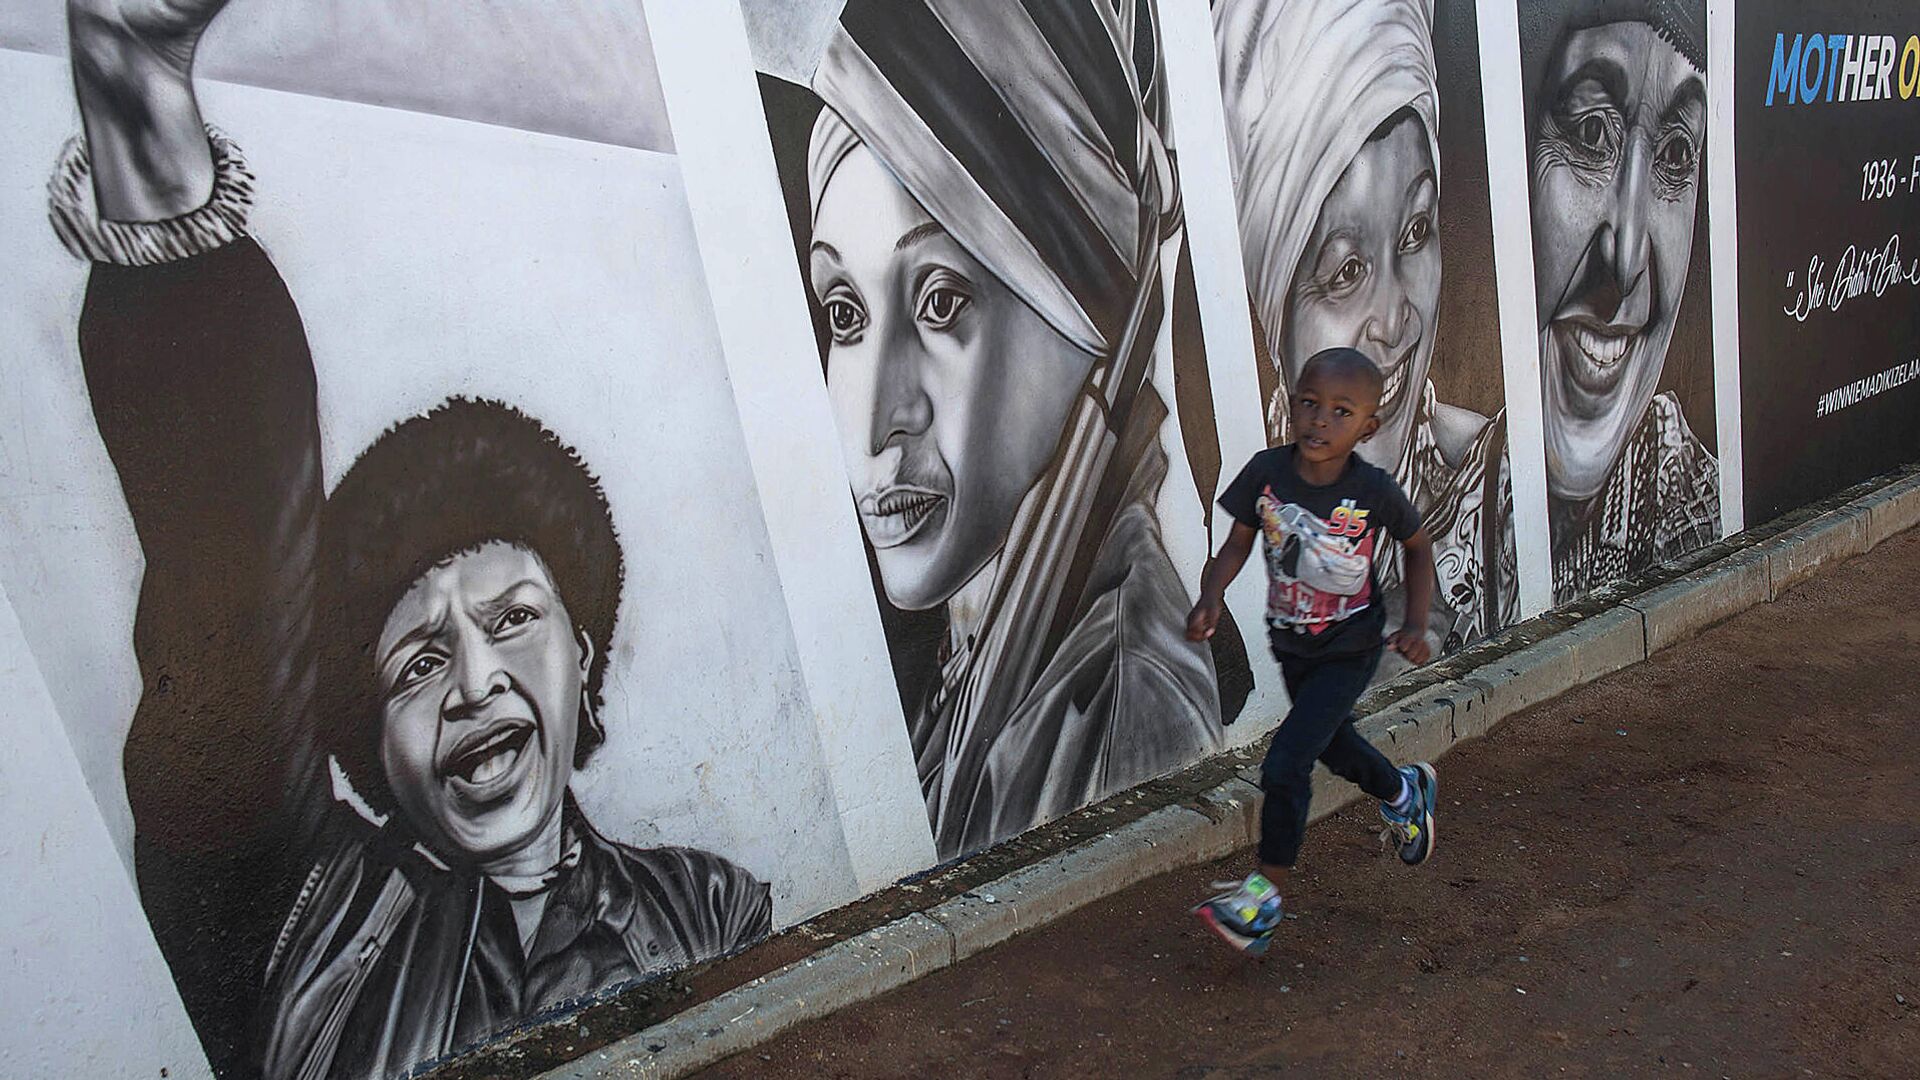 Мальчик проходит мимо портрета Винни Манделы во время празднования дня окончания апартеида в Южной Африке - РИА Новости, 1920, 21.03.2020